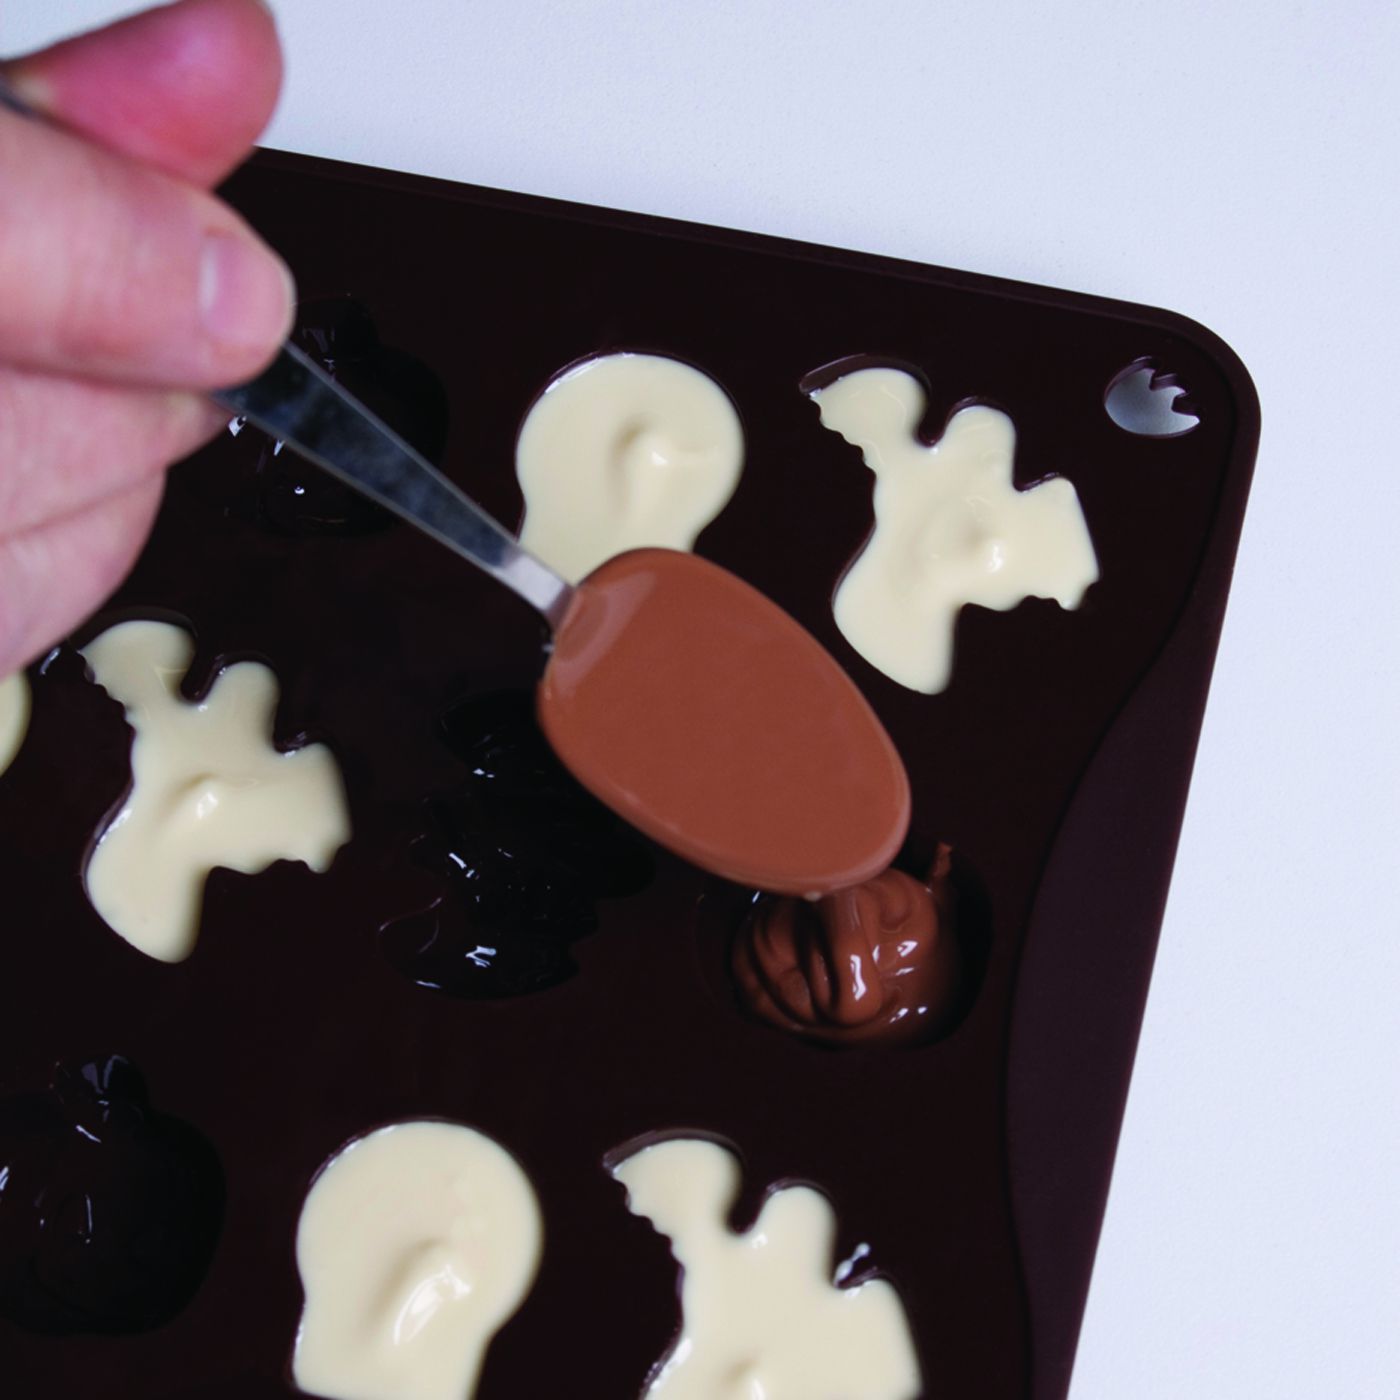 Stampo multiporzione silicone cioccolatini Halloween CHOCO08S